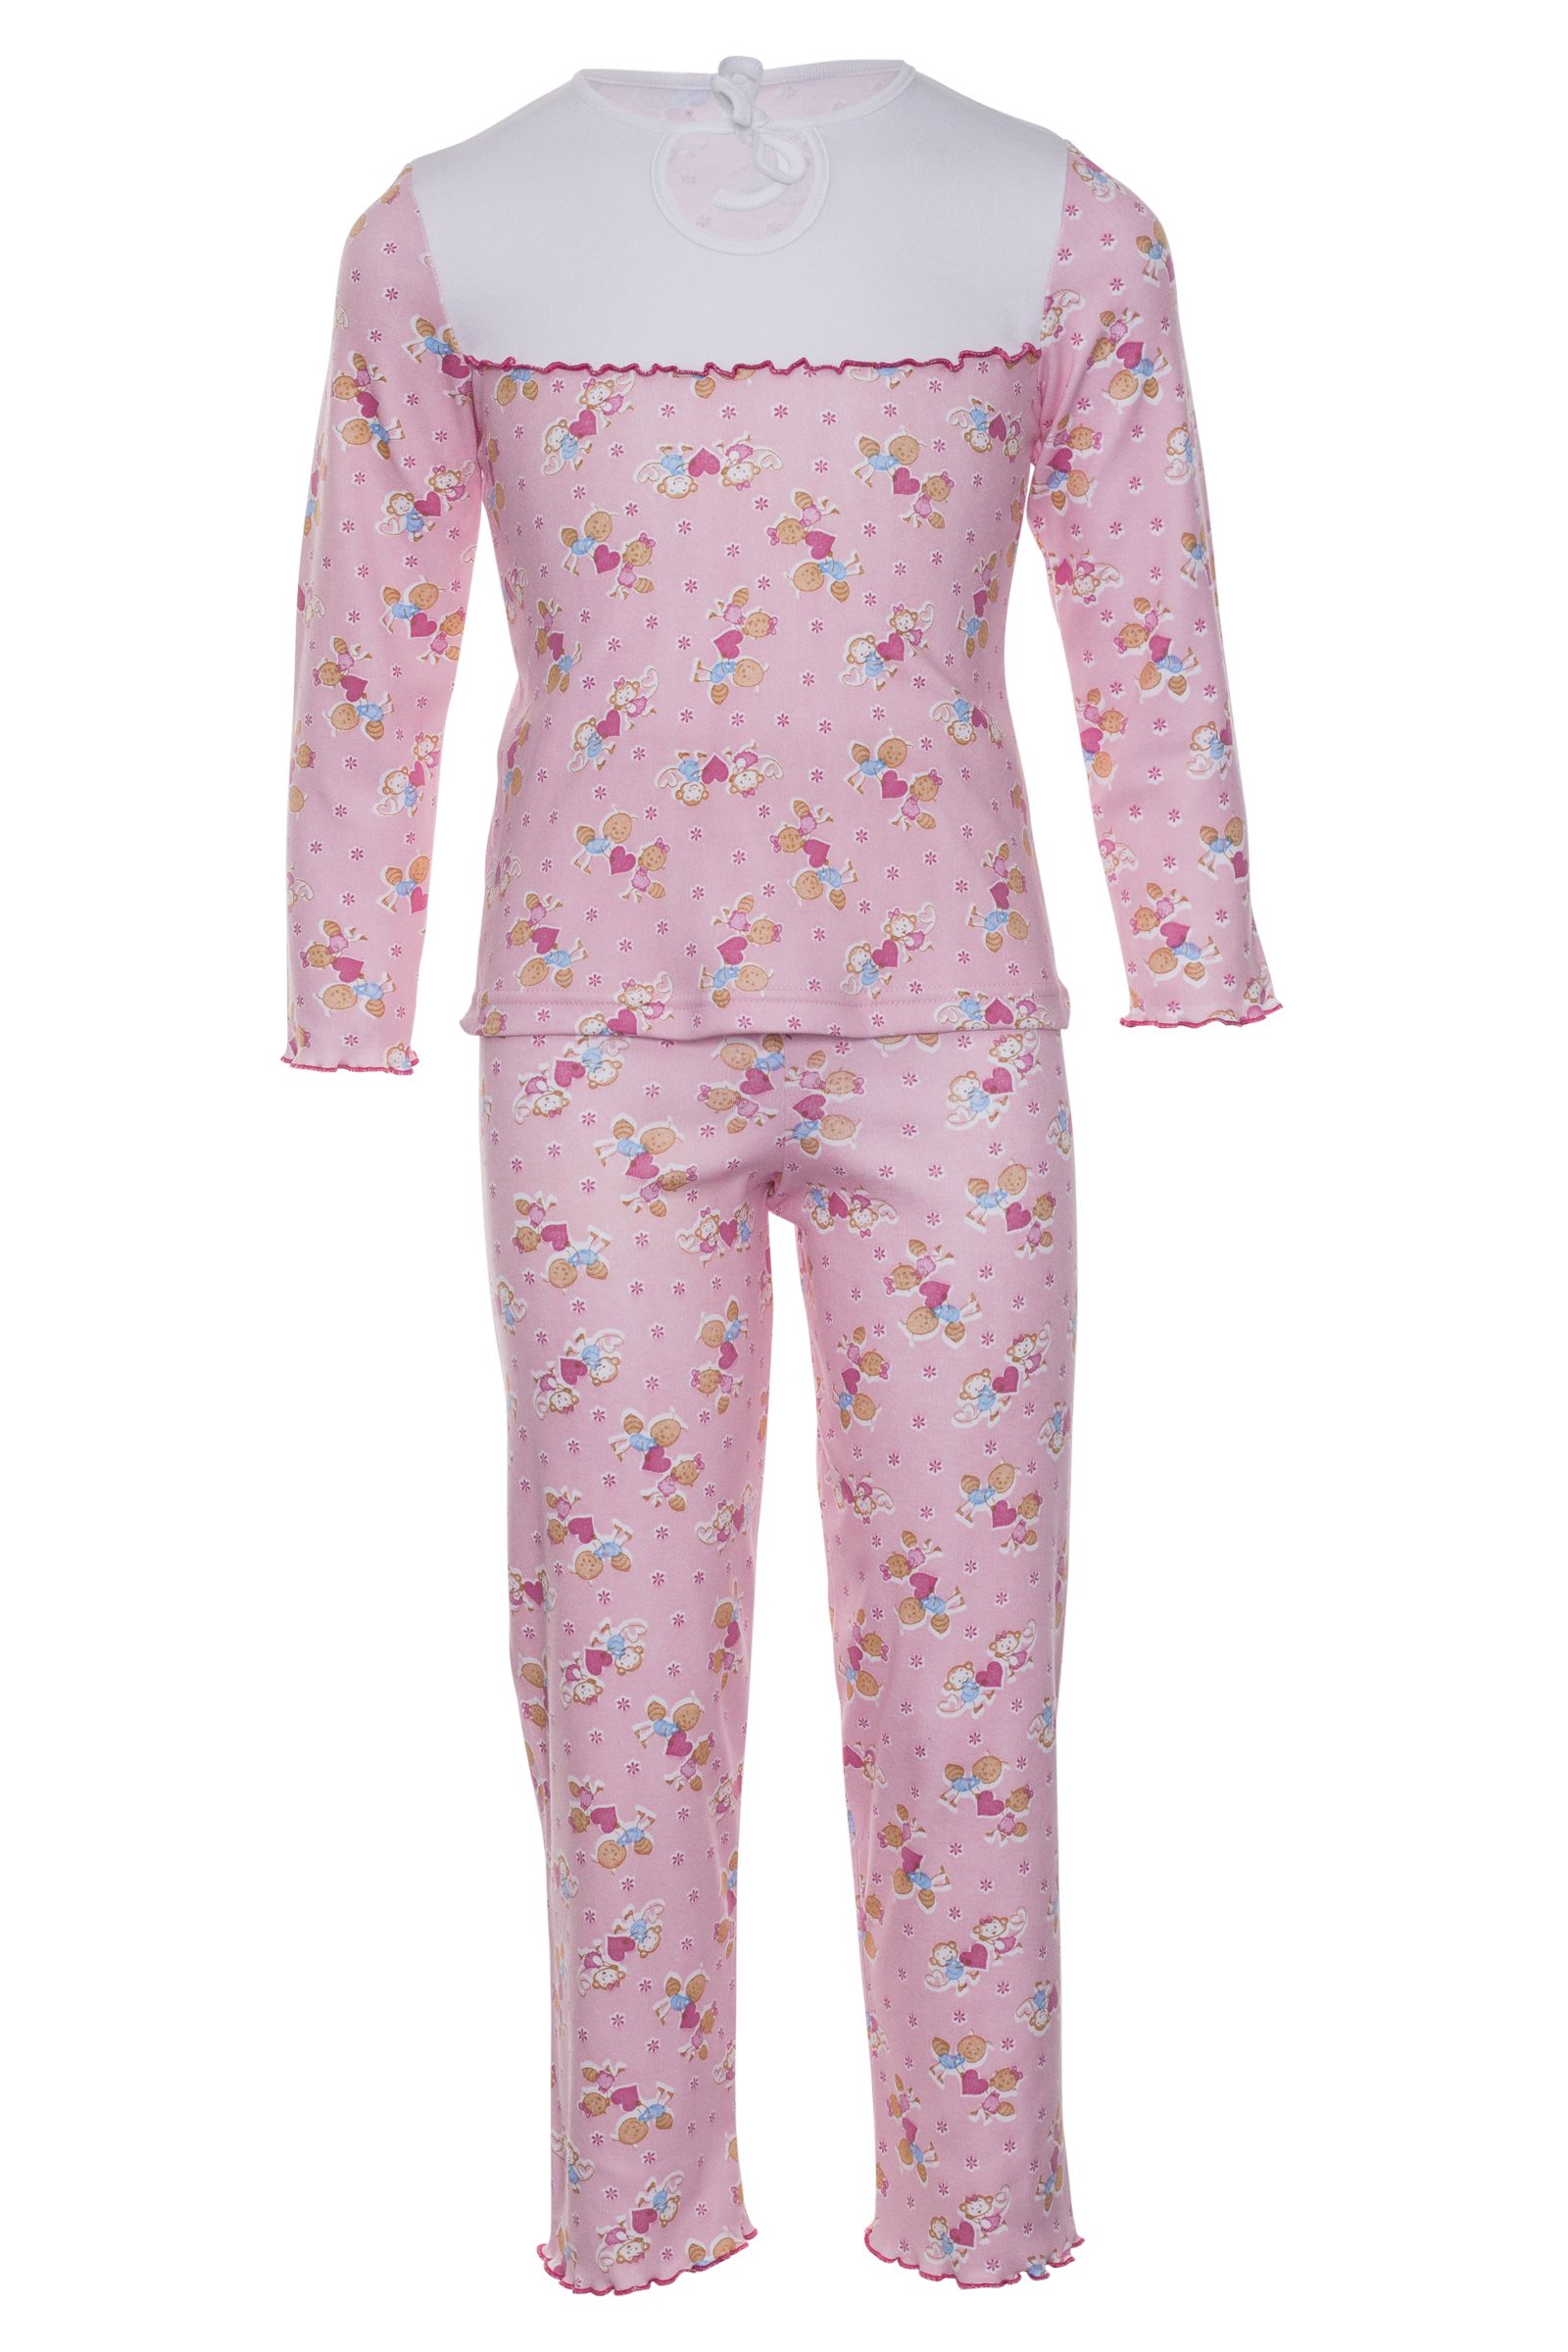 Пижама-ПЖ01-624 оптом от производителя детской одежды 'Алёна'